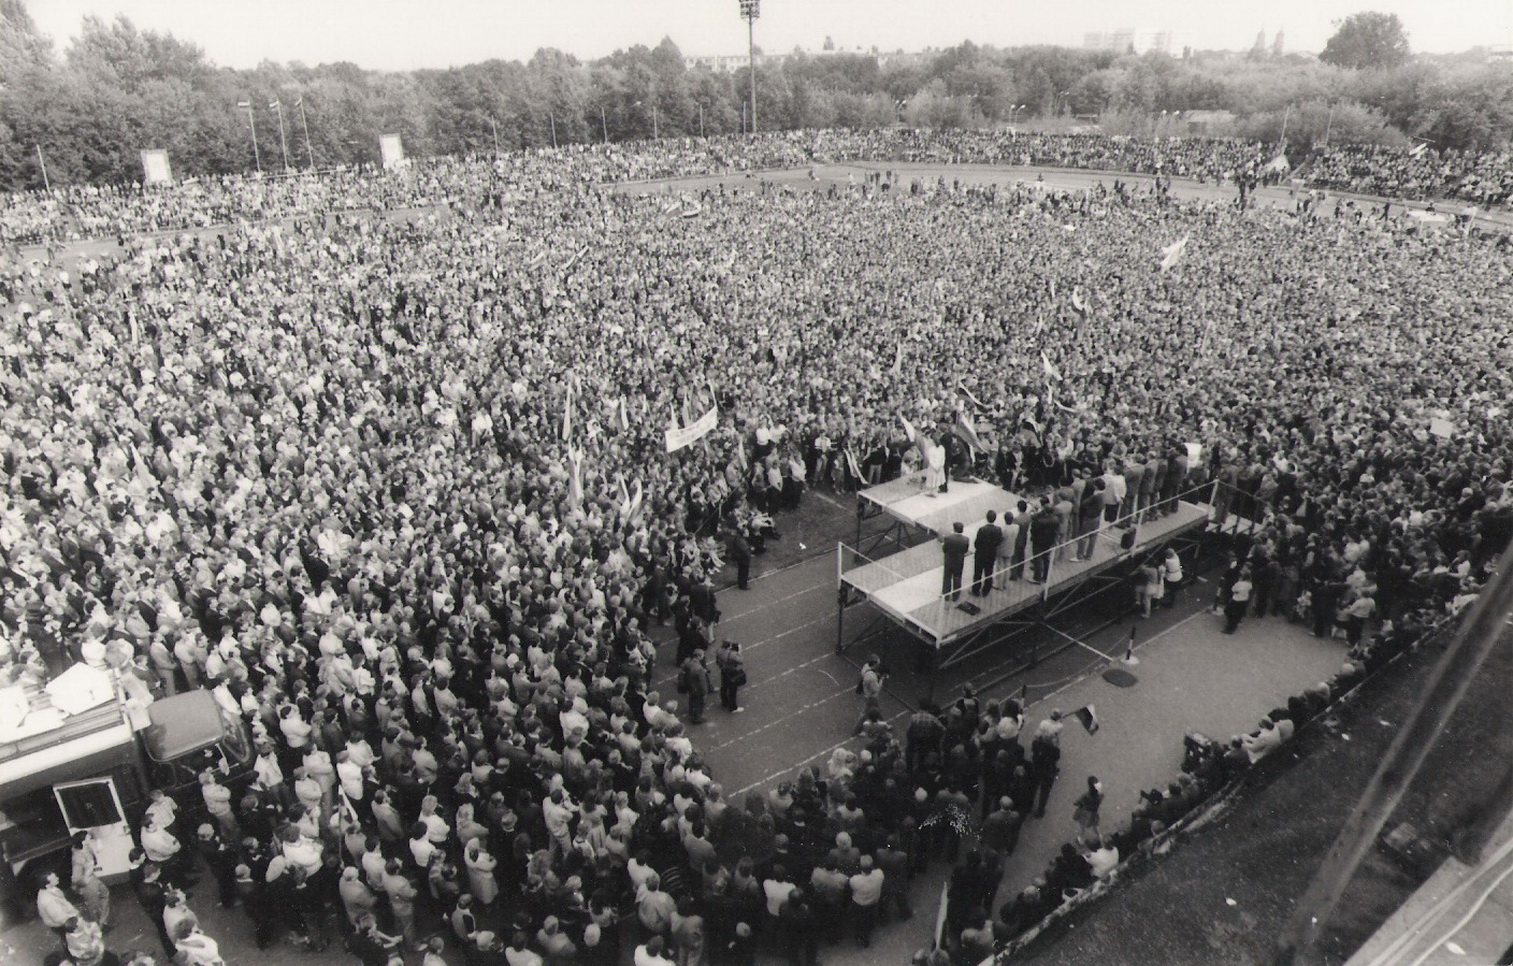 XX amžiaus devintojo dešimtmečio antroji pusė atnešė Lietuvai daugybę pokyčių, galiausiai nuvedusių į 1990 metų kovo 11-ąją. Toje ypatingoje eroje išsiskyrė 1988-ieji, Sąjūdžio įsikūrimo metai, – vadinamosios dainuojančios revoliucijos laikas. Vienas ženkliausių jos įvykių liko neatsiejamas nuo Panevėžio.